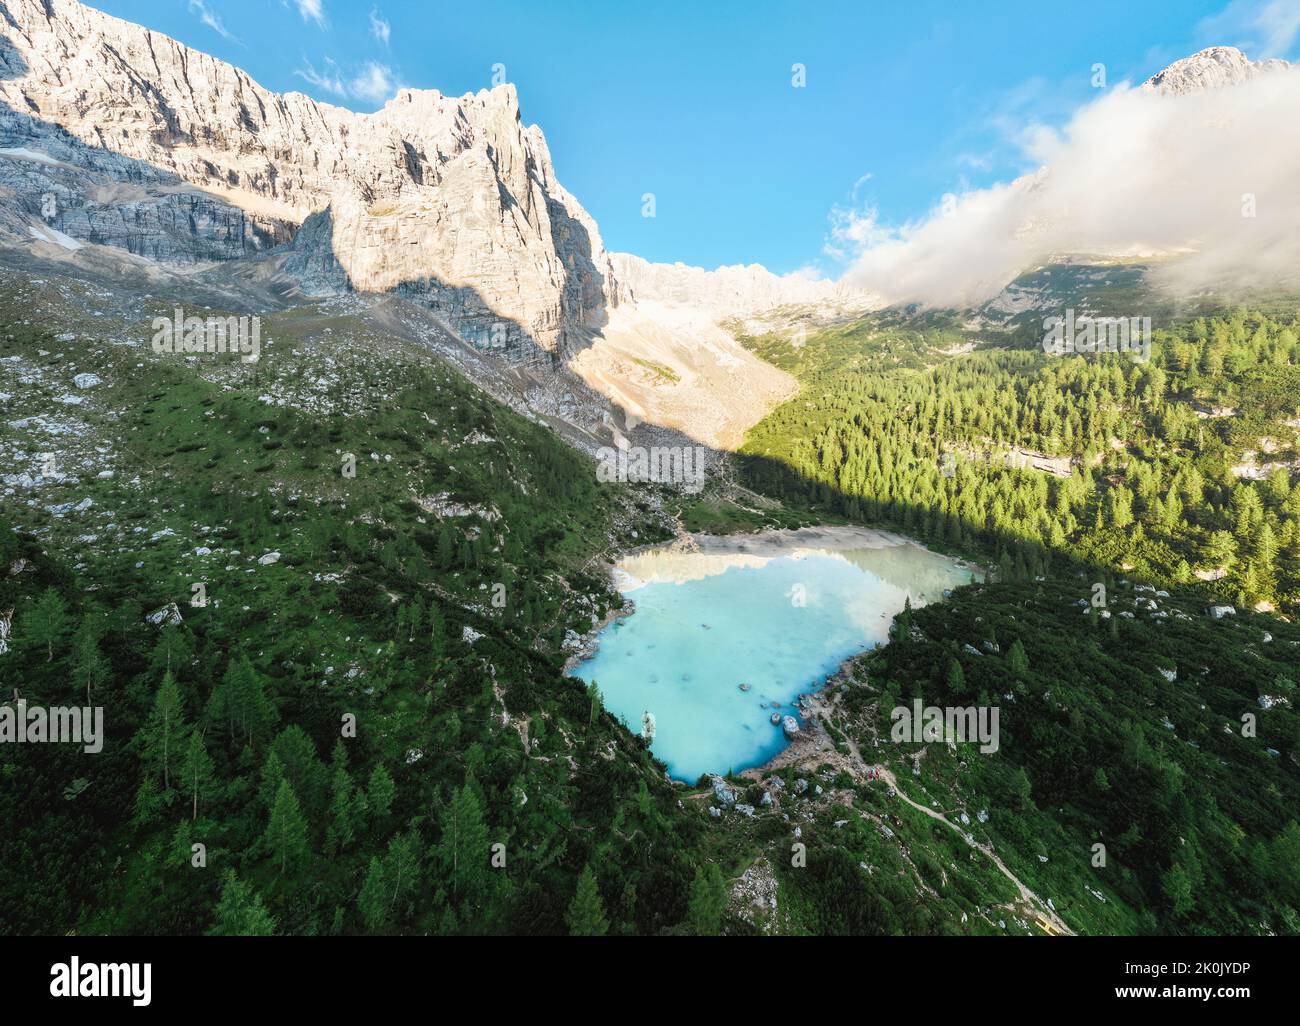 Vue d'en haut, vue panoramique sur le lac Sorapis (Lago di Sorapis) avec ses eaux turquoise entourées d'une forêt et de montagnes. Banque D'Images